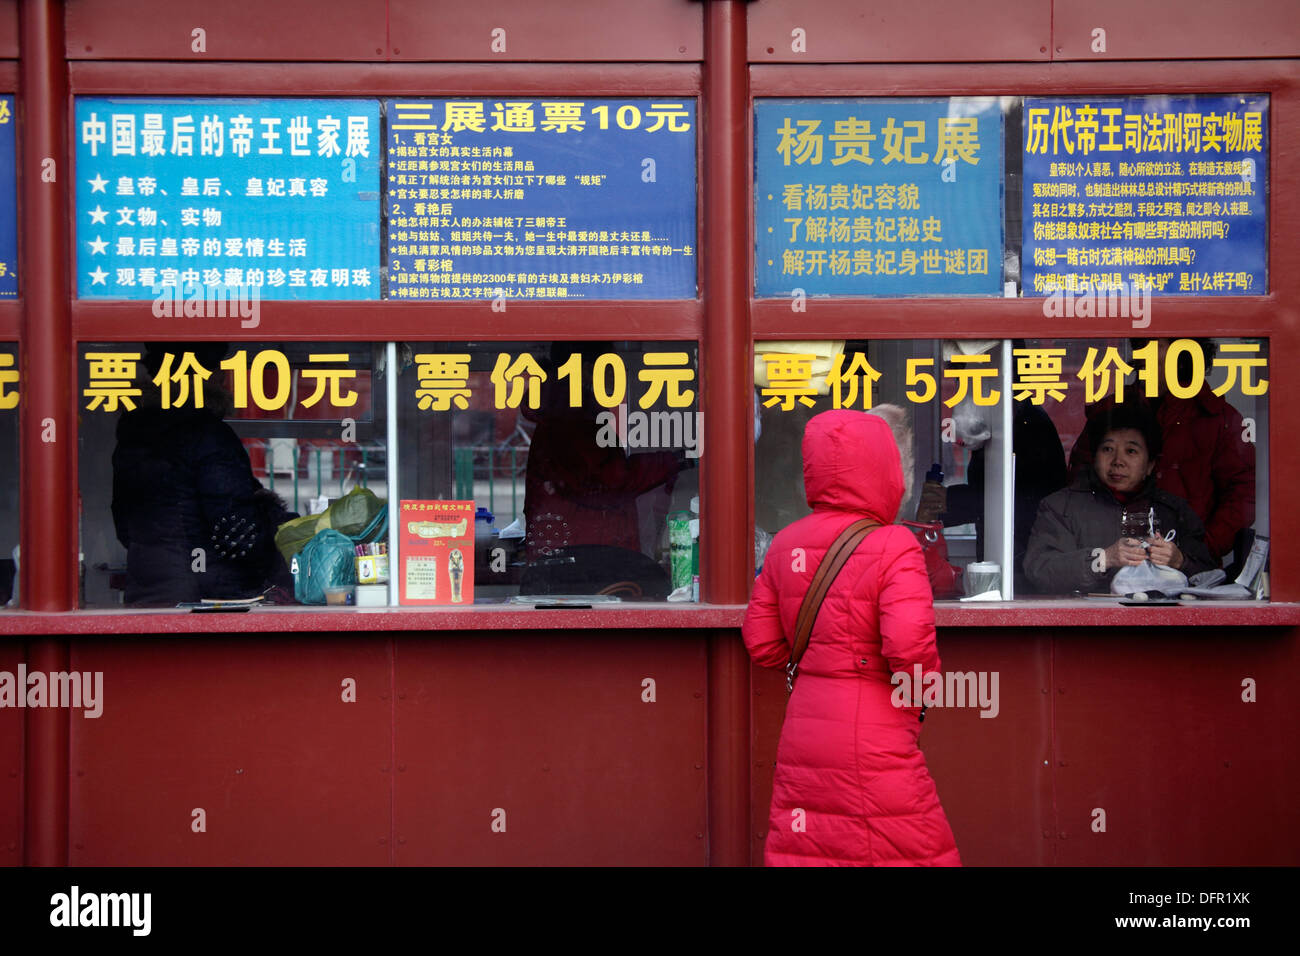 Ticket Booth finestra contrassegnati con i nomi amd i prezzi di molte esposizioni all interno della Città Proibita di Pechino in Cina. Foto Stock